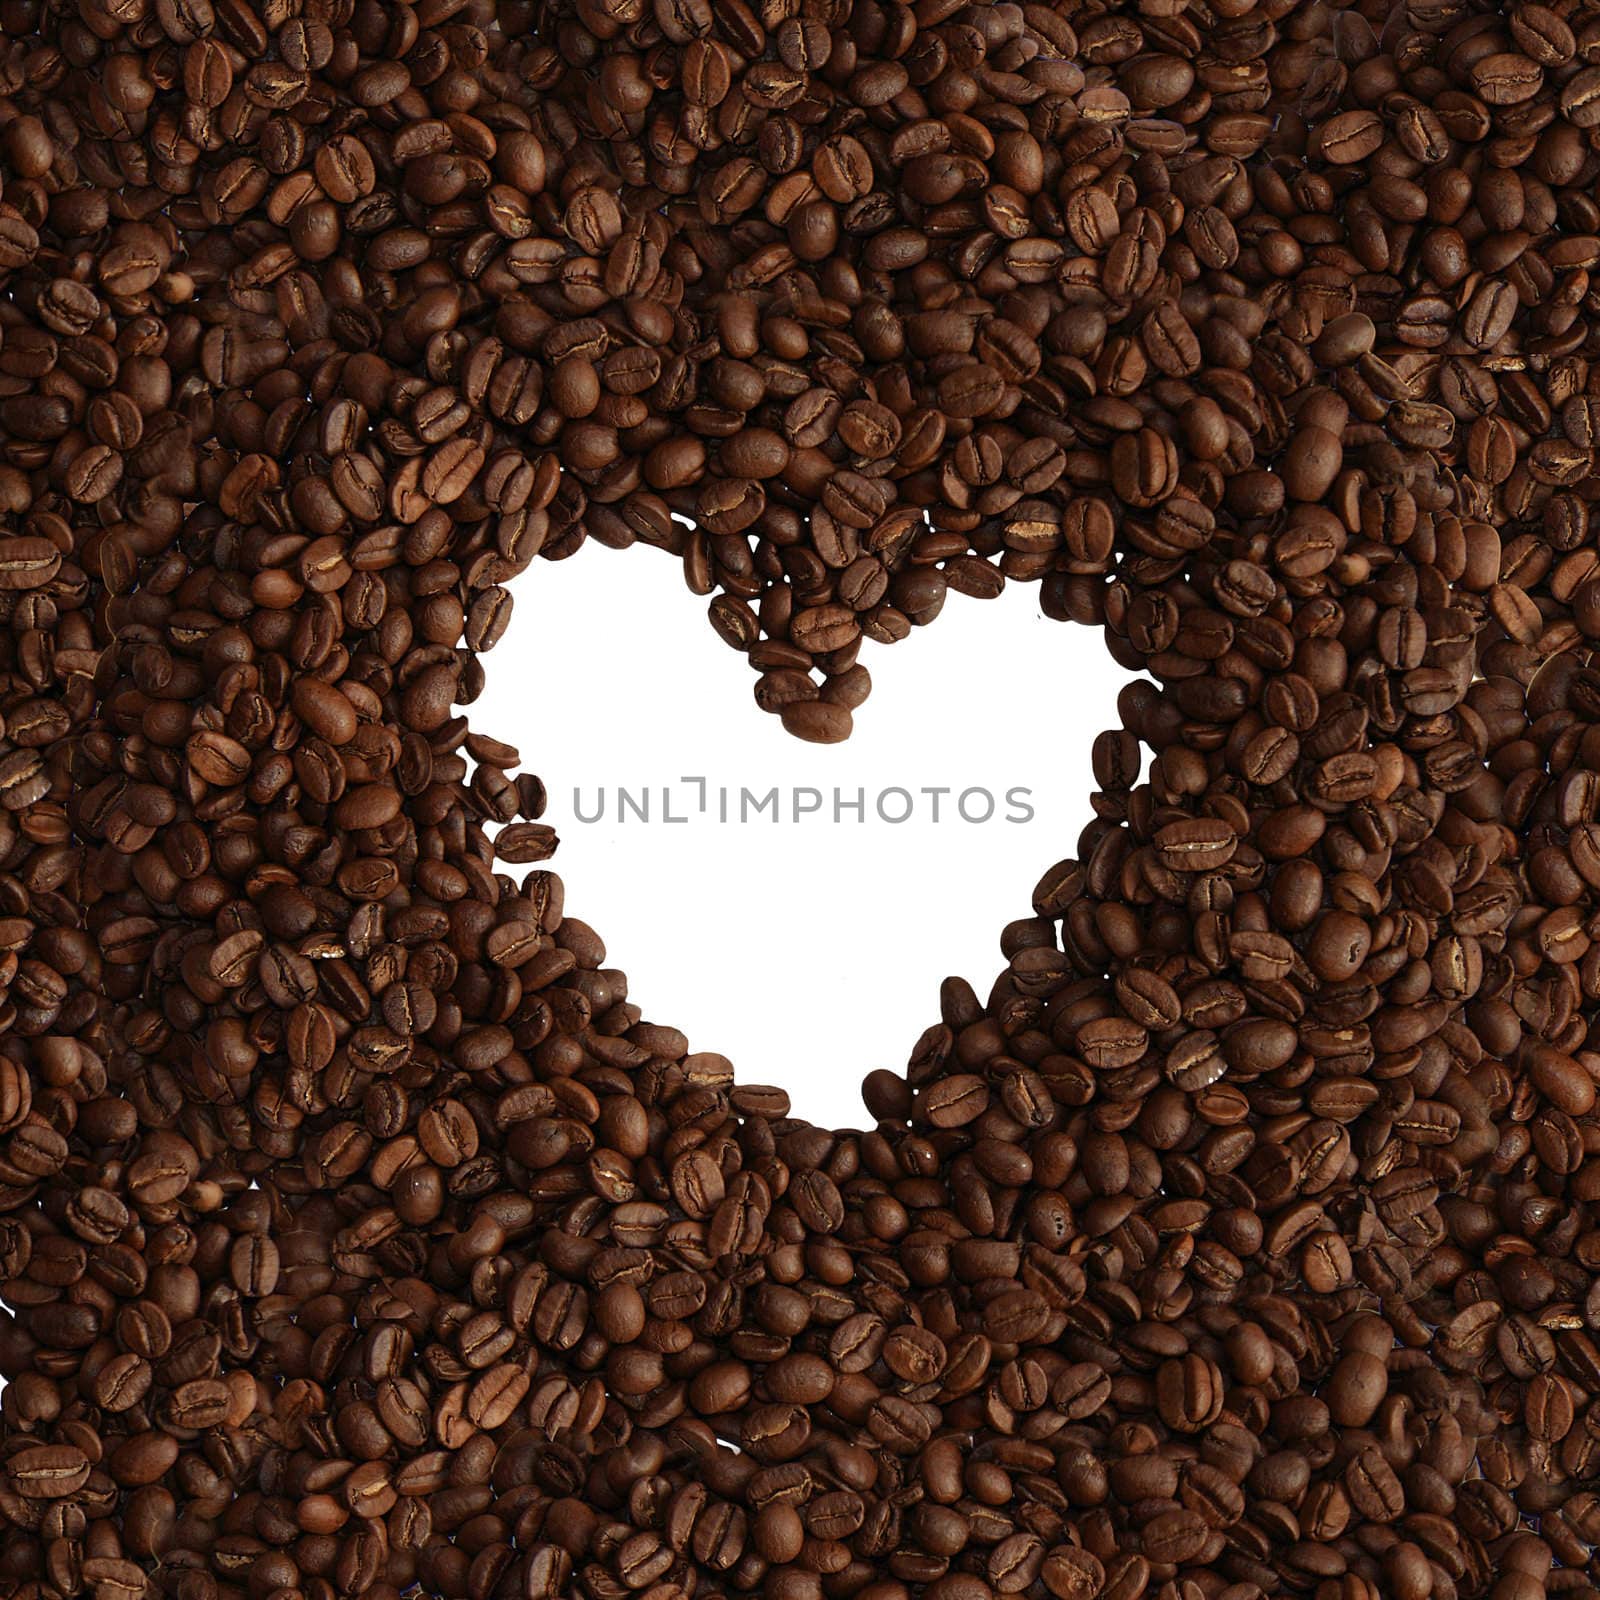 Coffee beans on white background by Kudryashka